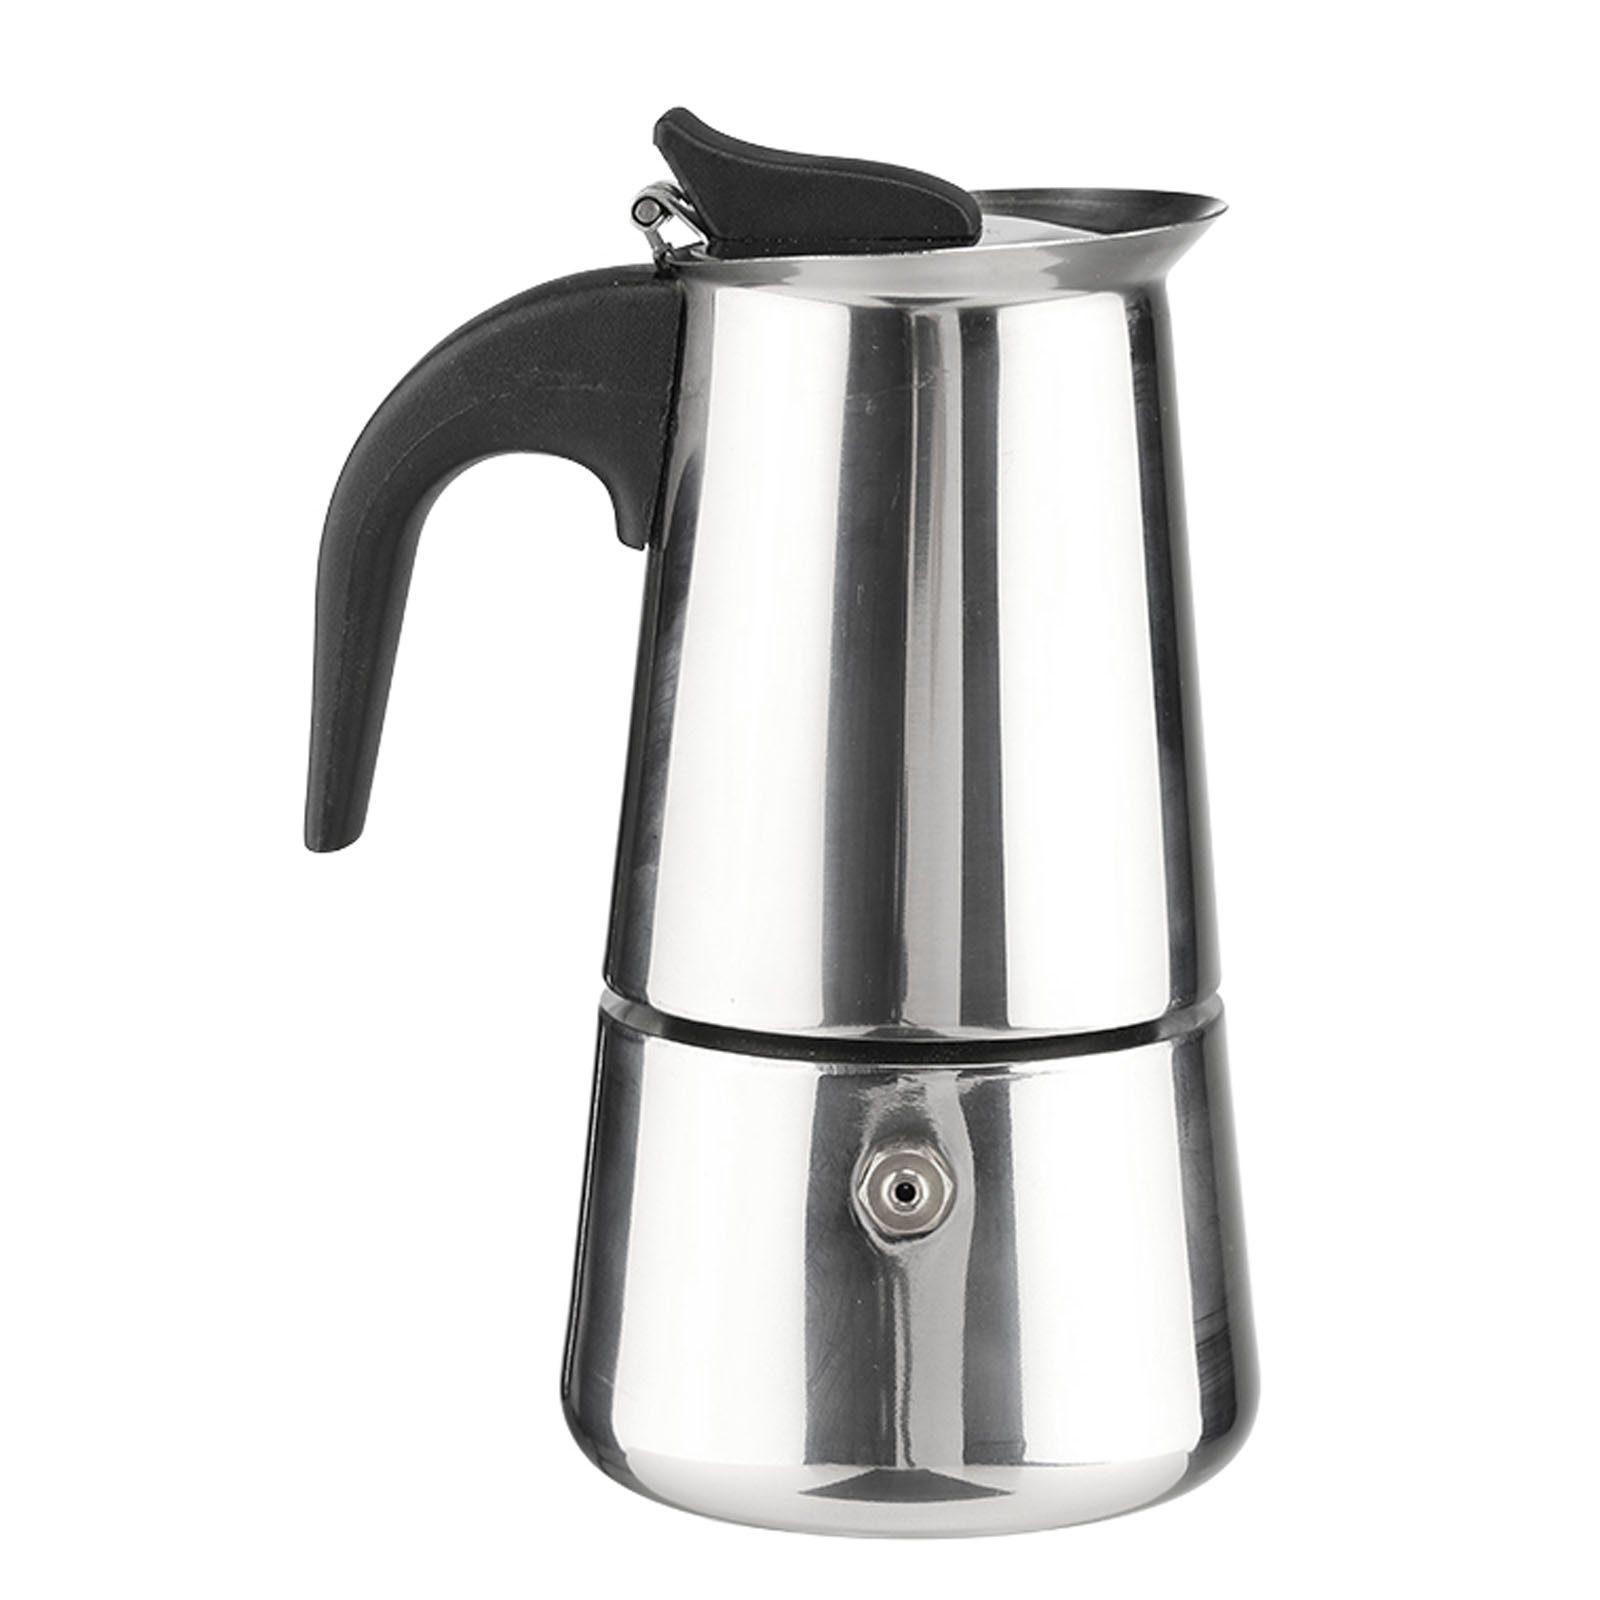 HAC24 Espressokocher Espressobereiter Edelstahl Espresso Kanne Kaffeekocher, 0,1l Kaffeekanne, für 2 Tassen